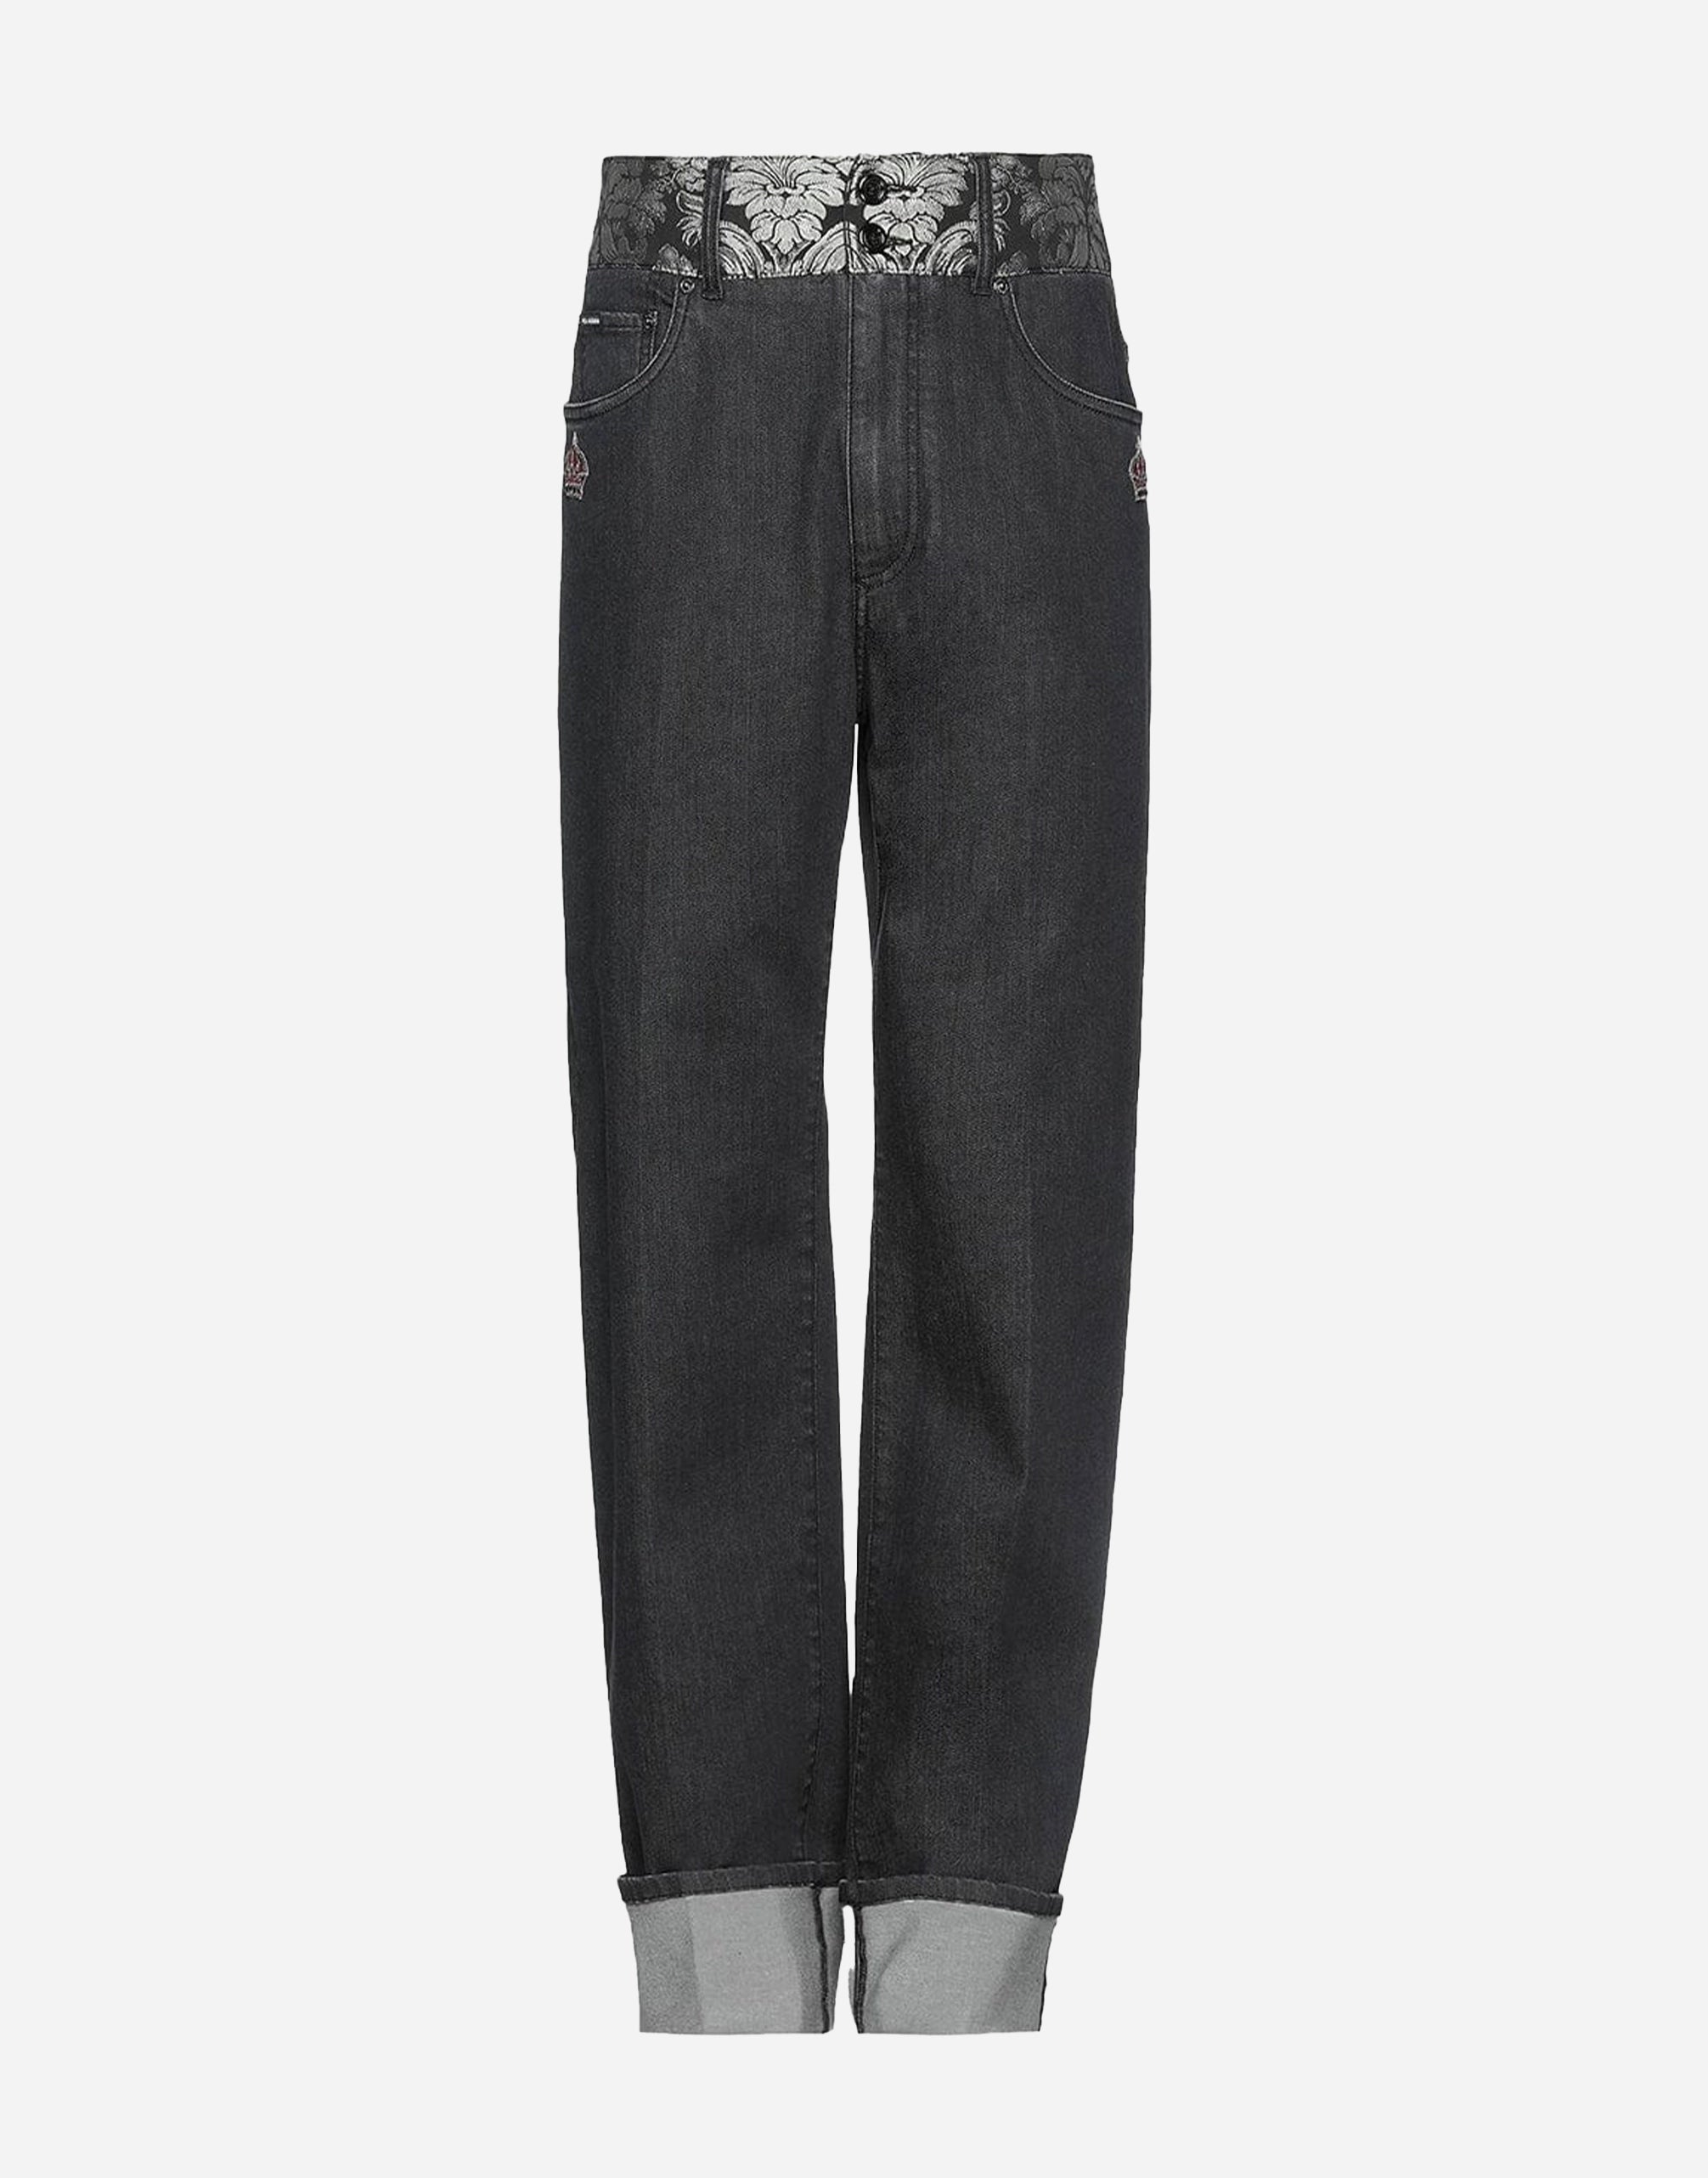 Jacquard Waist Denim Jeans